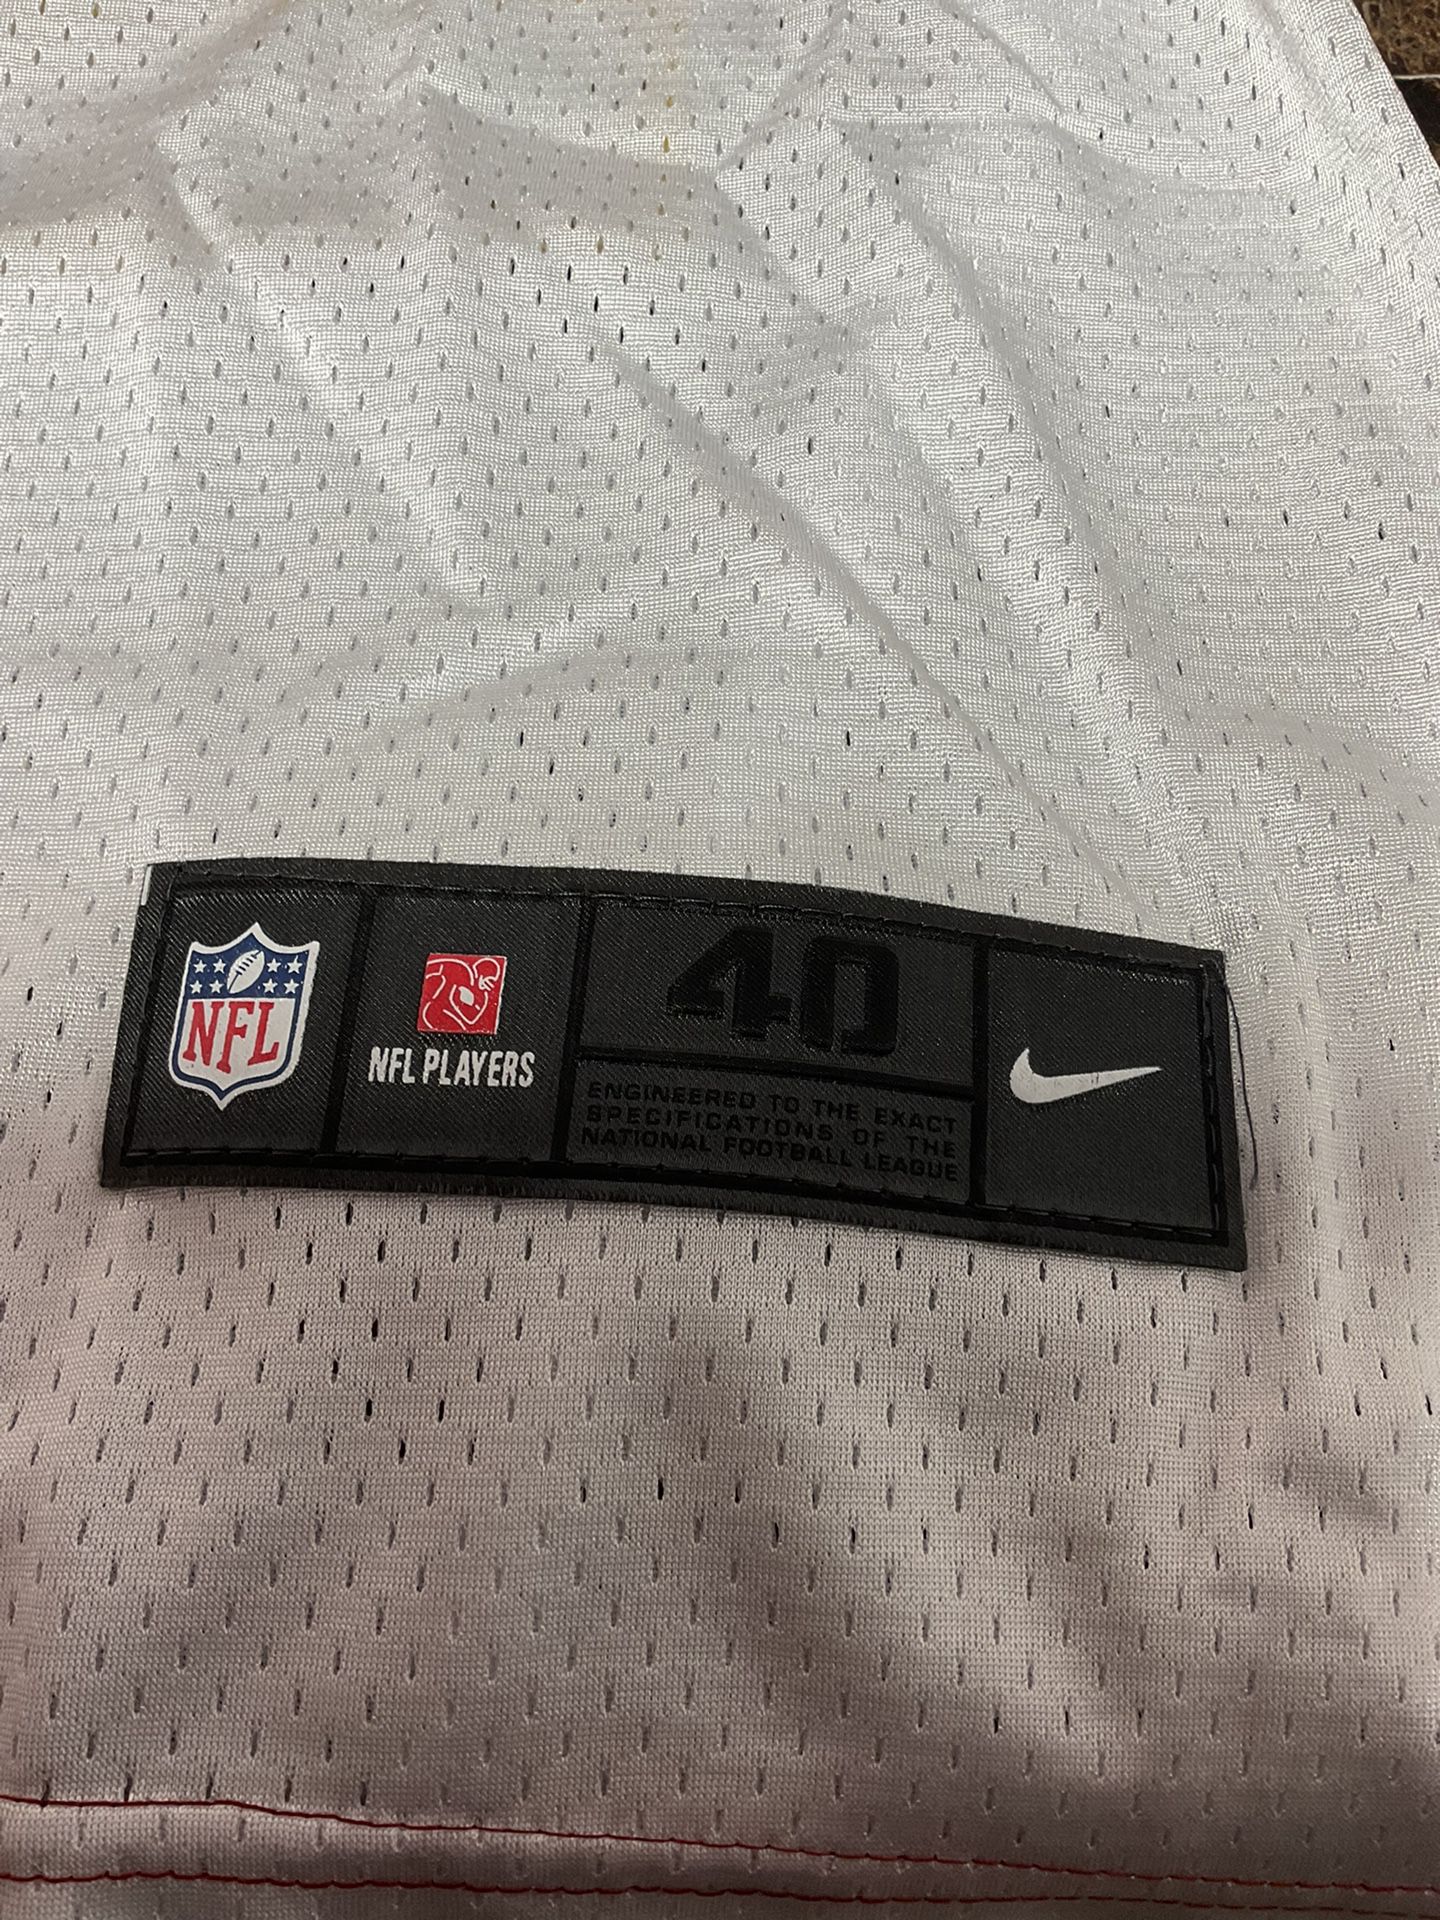 Washington Redskins #10 RGIII NFL Home Away Split Nike JERSEY Sz 40 - Medium NWT New with tags